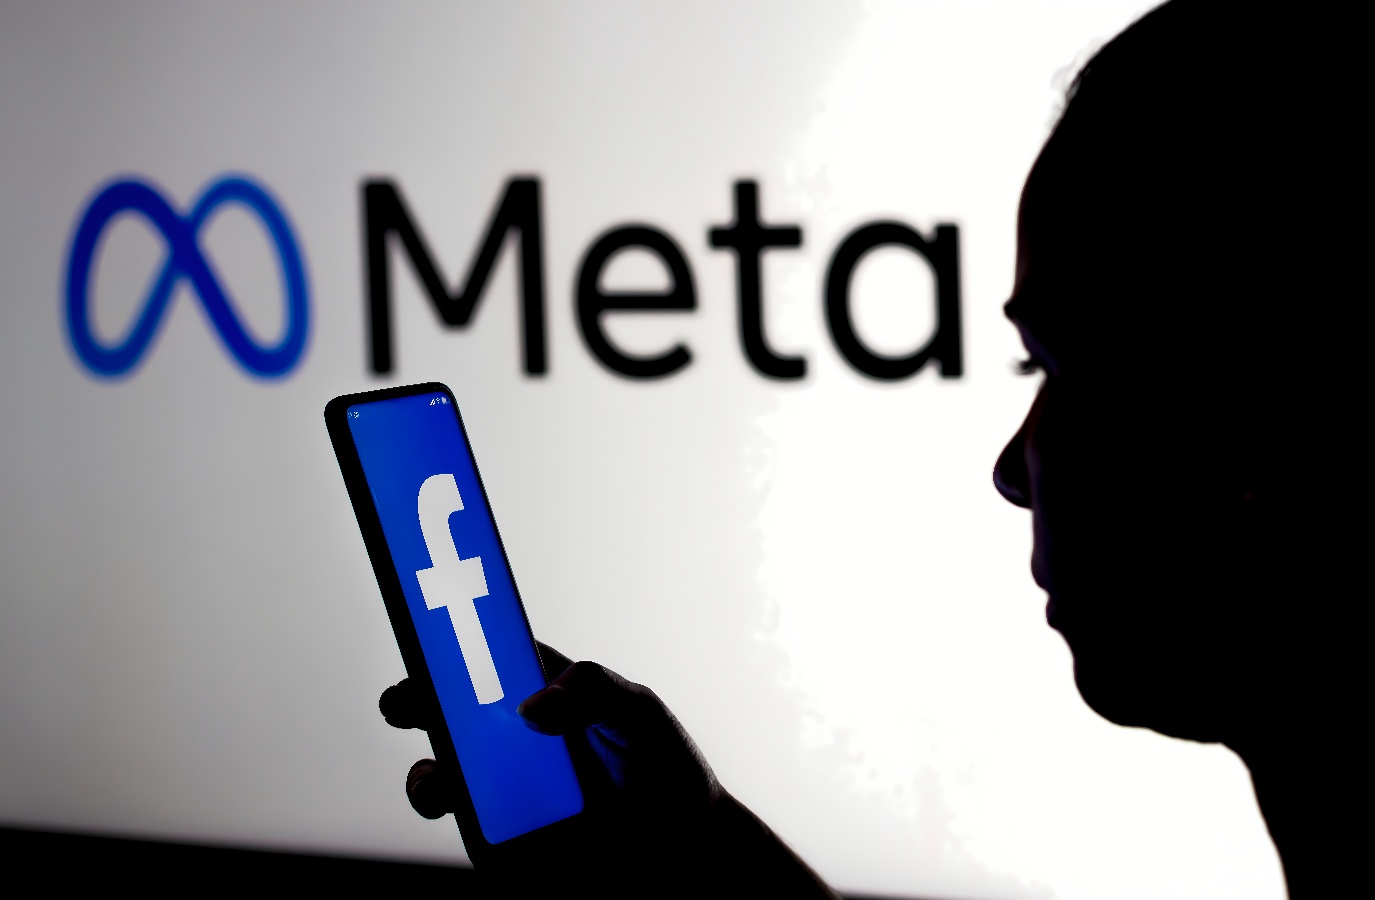 图片展示一位剪影人物手持手机，手机屏幕上显示Facebook的标志，背景是Meta的蓝色标识。